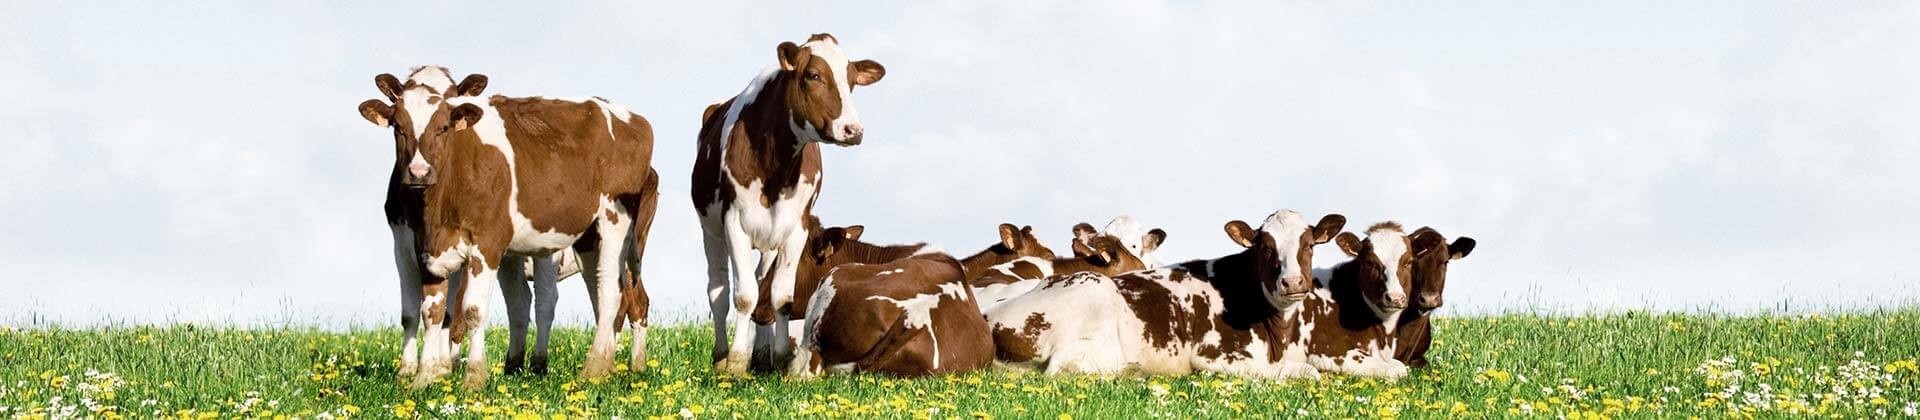 Eine Herde braun und weiß gefleckter Kühe auf einer grünen Blumenwiese